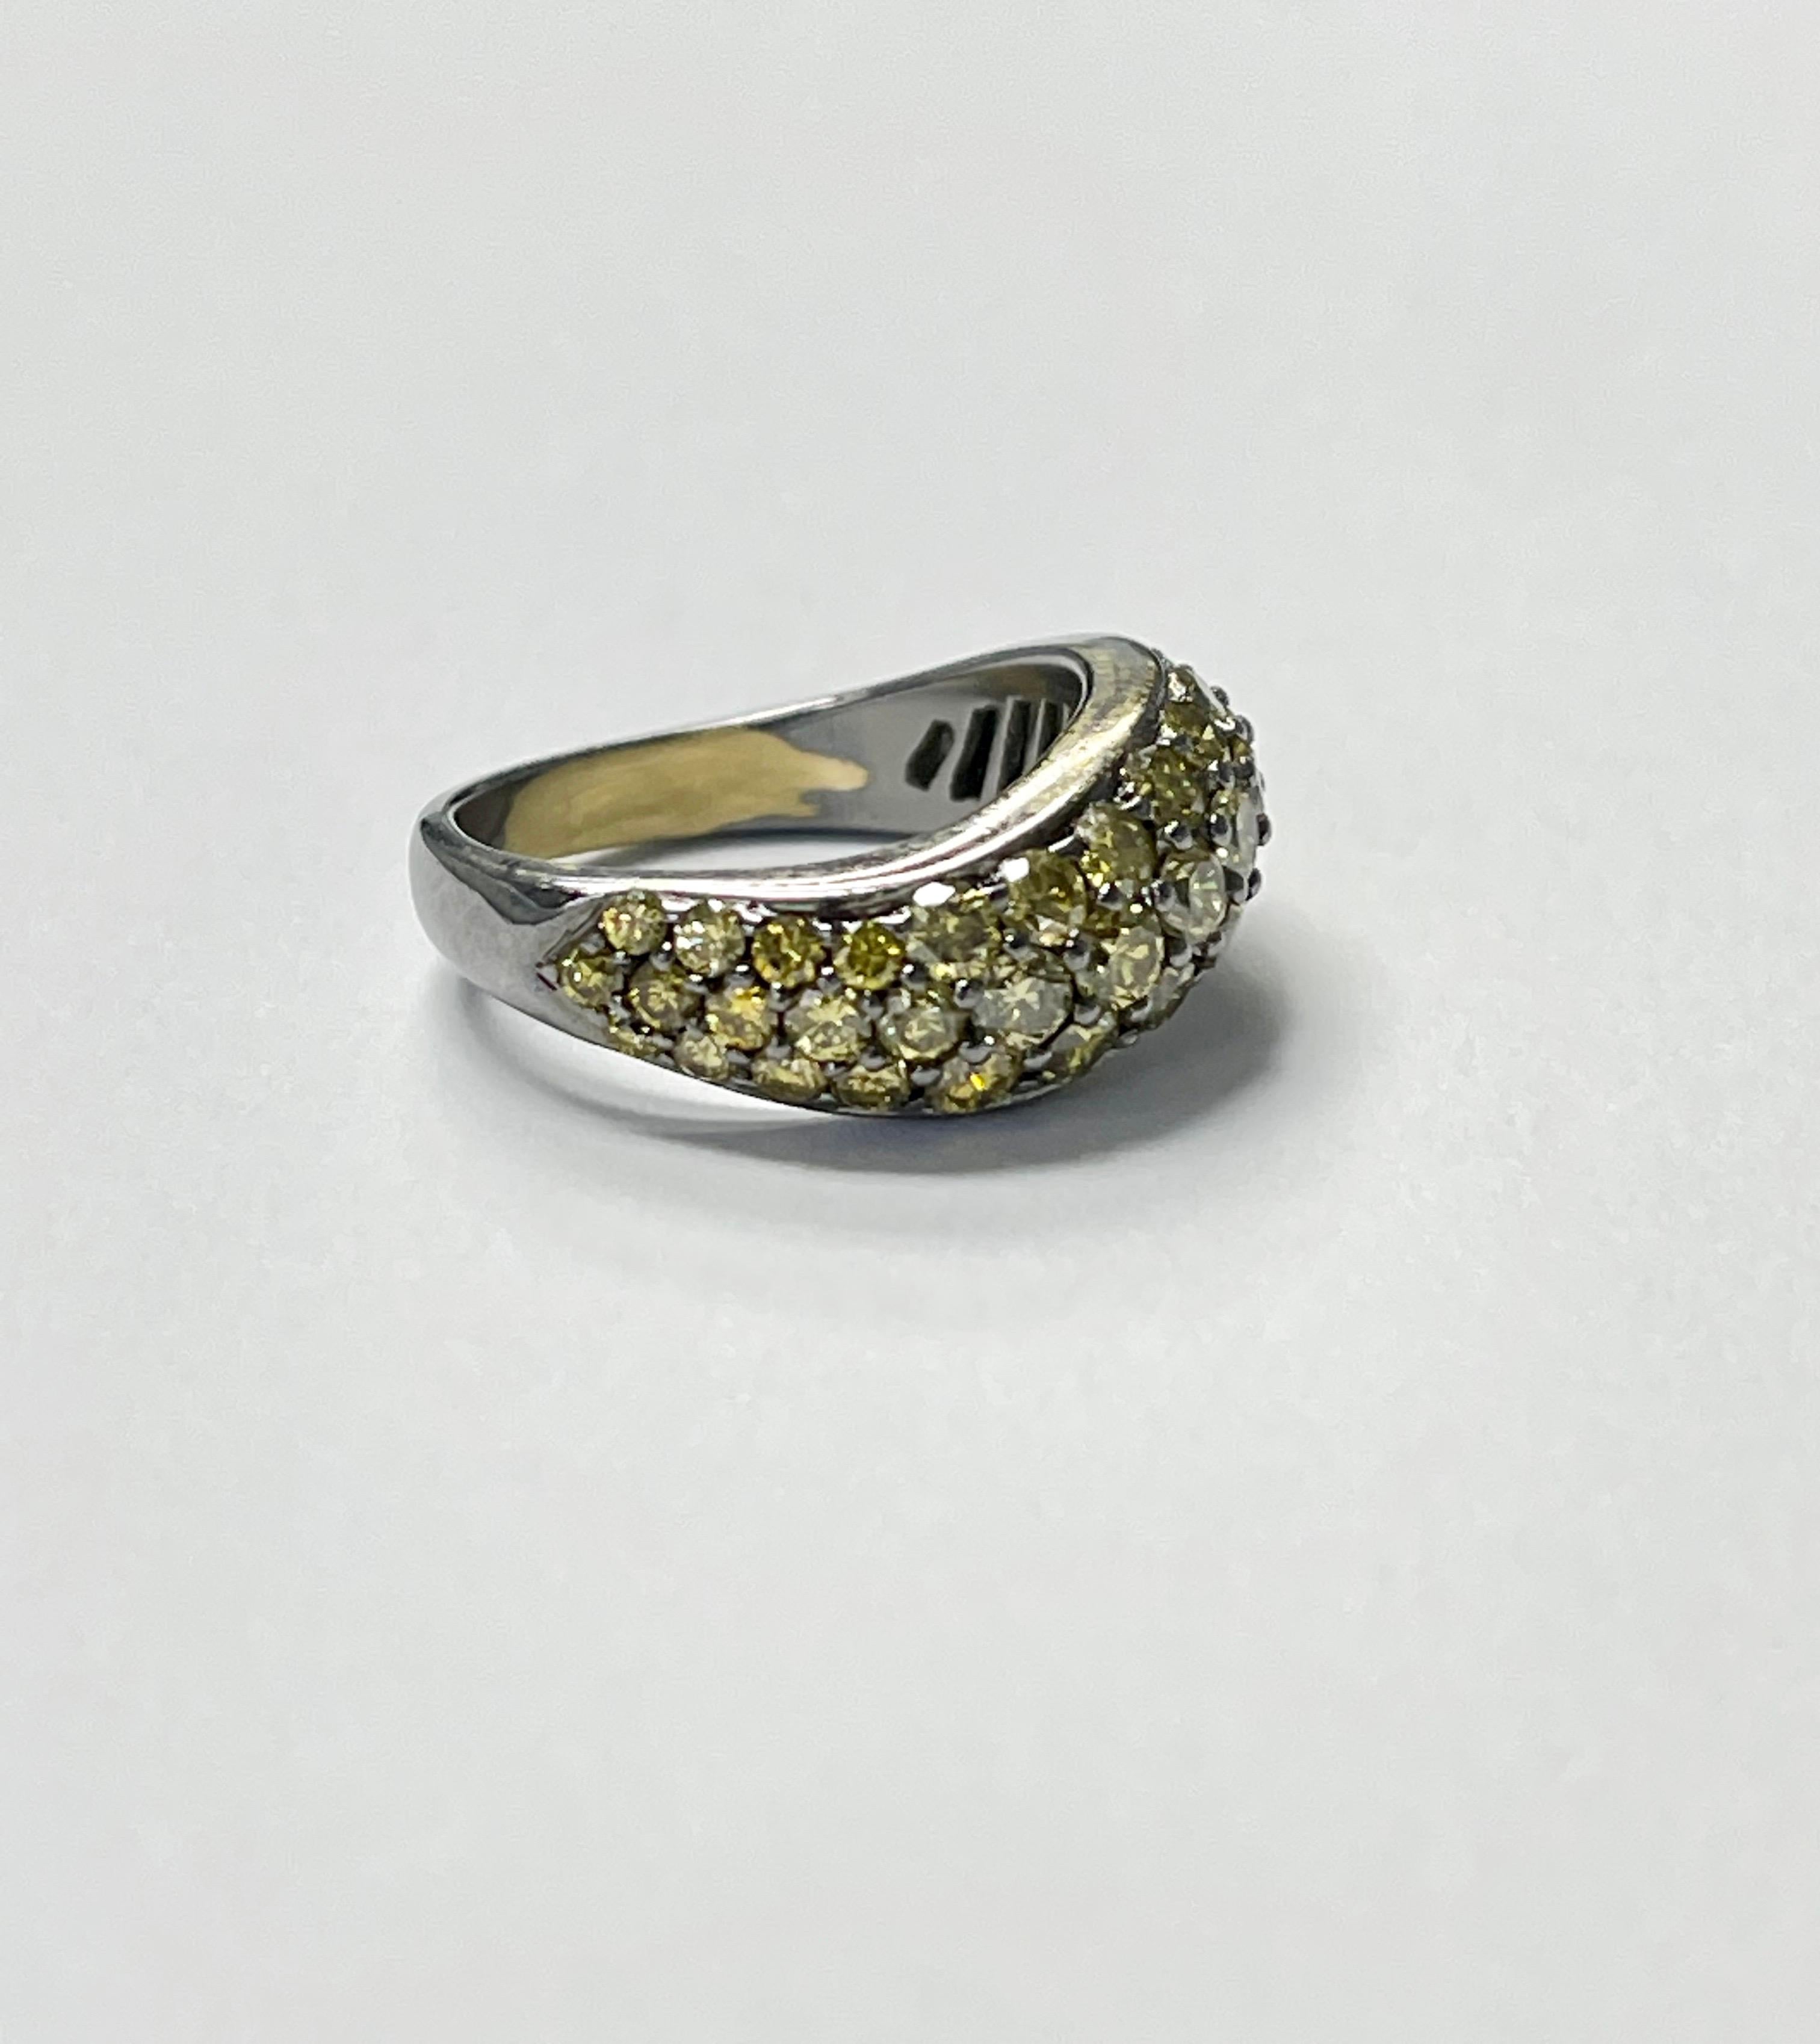 Bague à anneau en diamant jaune de 2,40 carats faite à la main en or noirci ou oxydé 18K. 
Les détails sont les suivants :
Poids du diamant jaune : 2,40 carats 
Métal : or noirci 18k
Taille de la bague : 6 1/2 